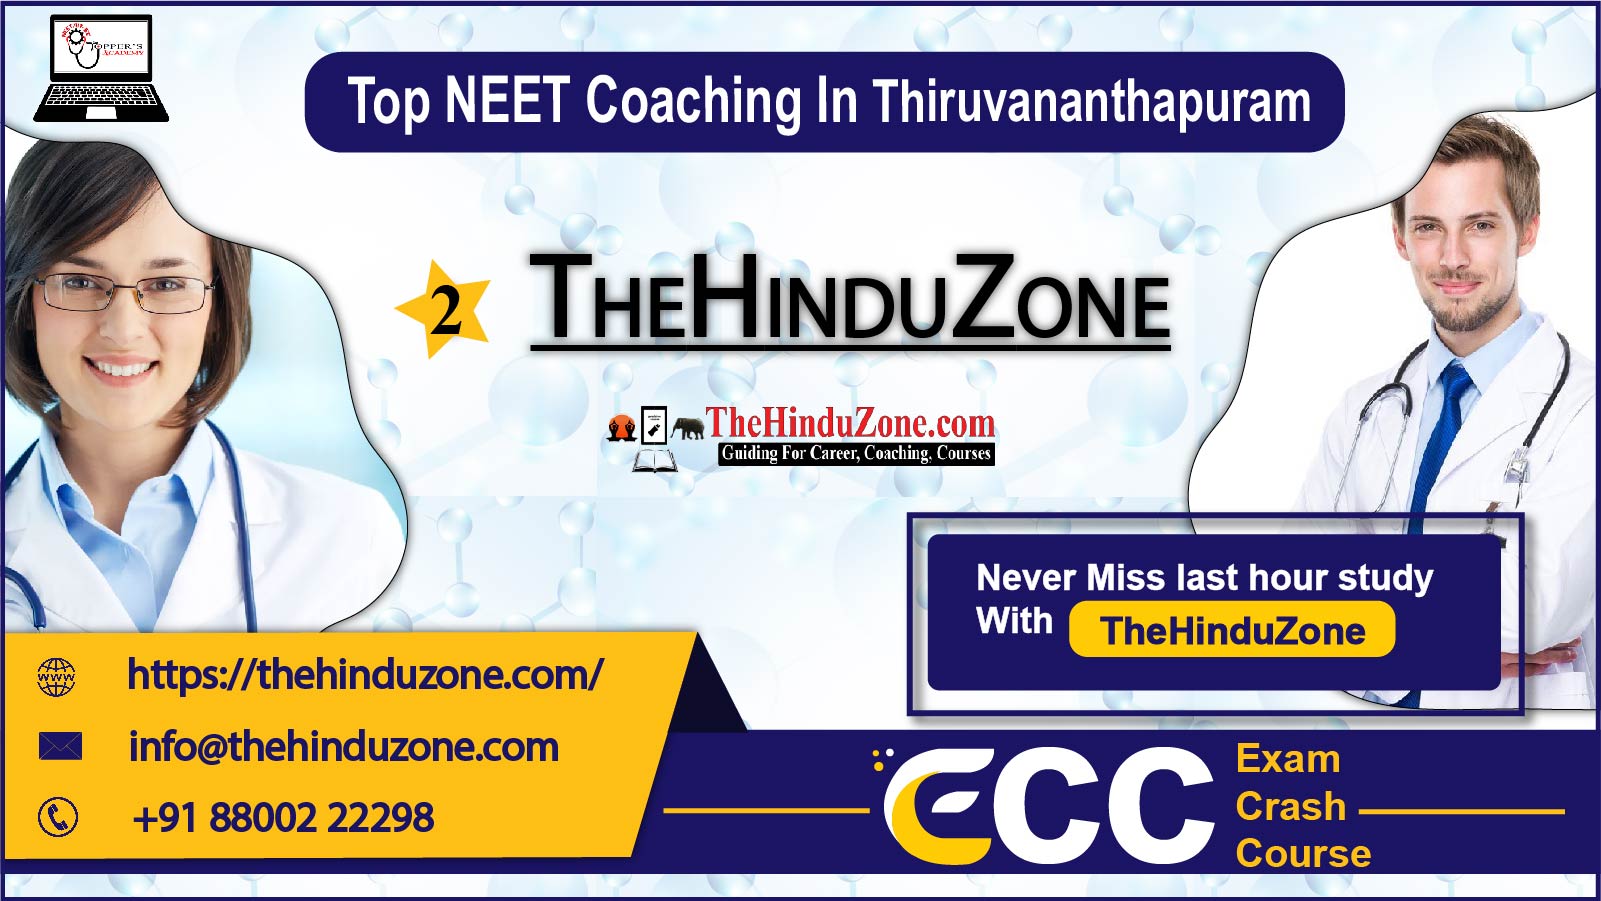 The Hinduzone NEET Coaching in Thiruvananthapuram